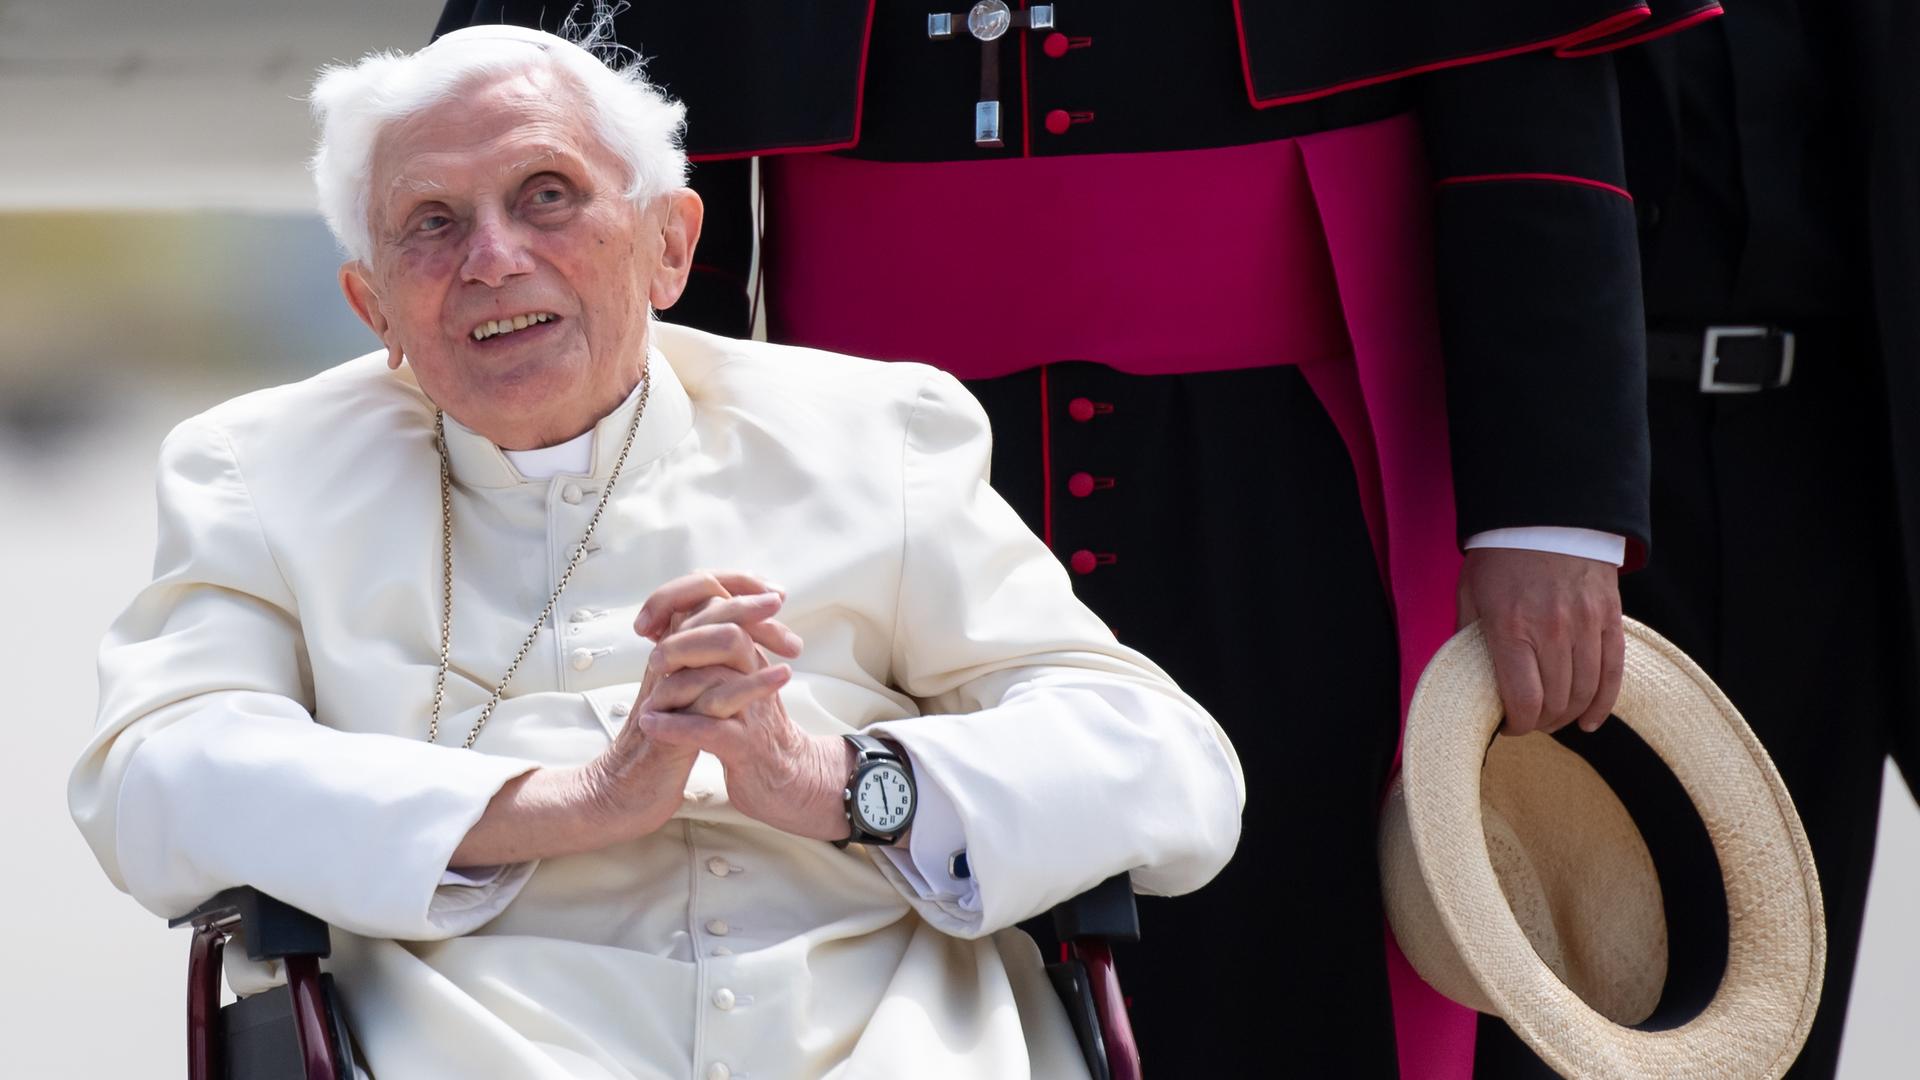 Der frühere Papst Benedikt der Sechzehnte sitzt in einem Stuhl und hat die Hände gefaltet.